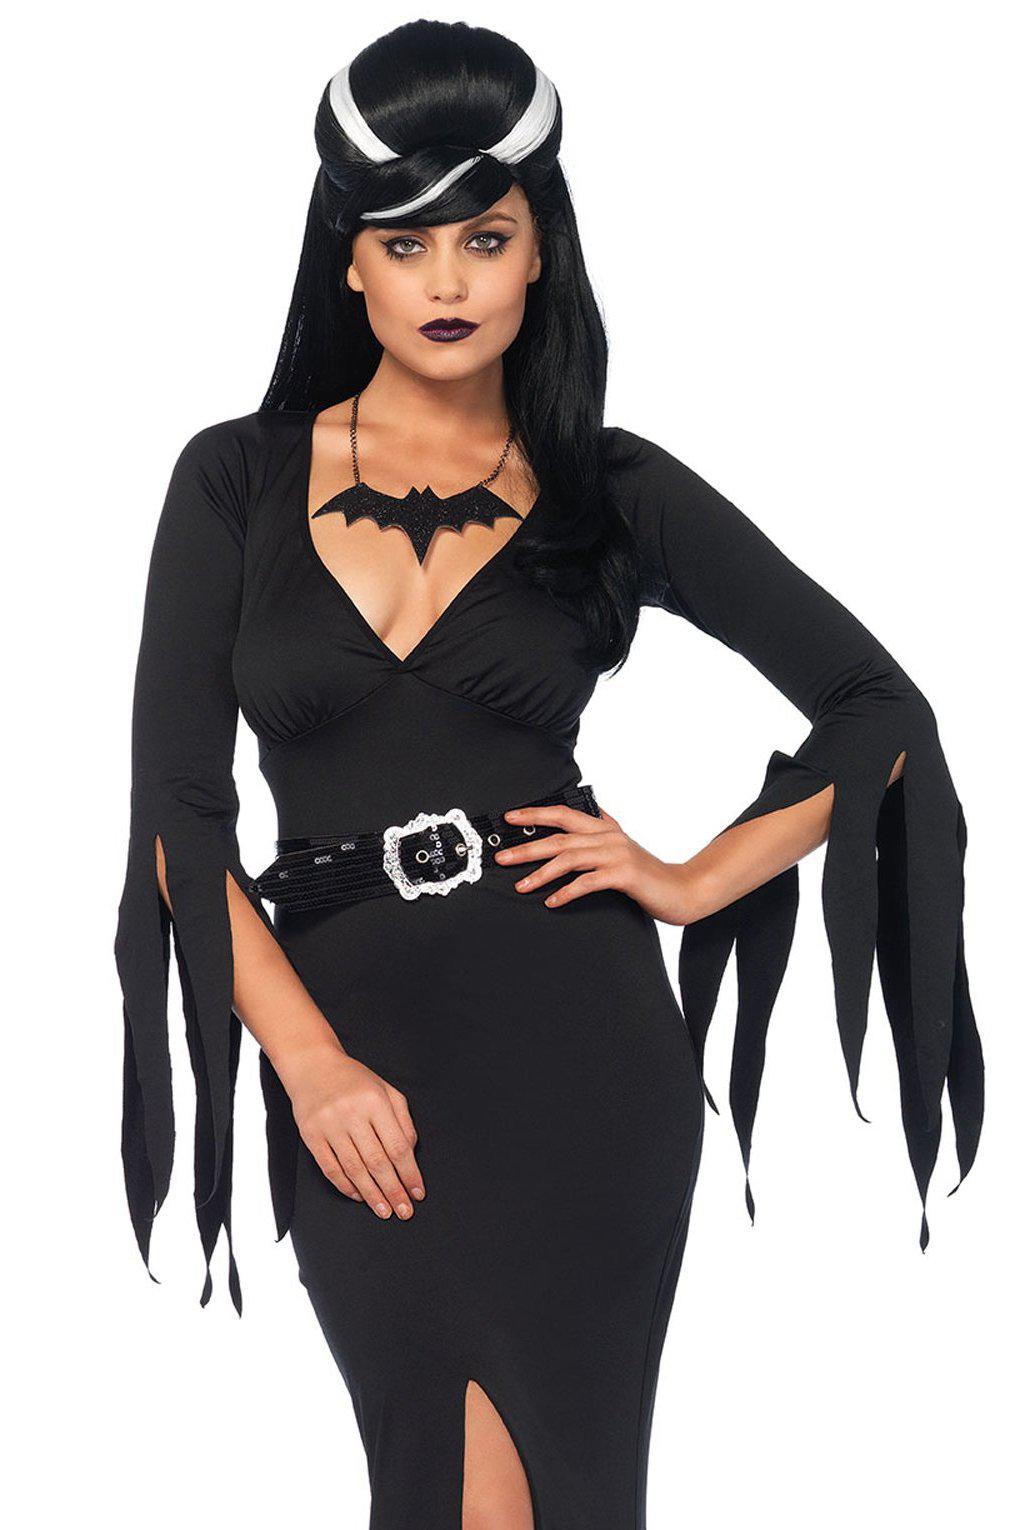 Immortal Mistress Costume-Villian Costumes-Leg Avenue-Black-XL-SEXYSHOES.COM